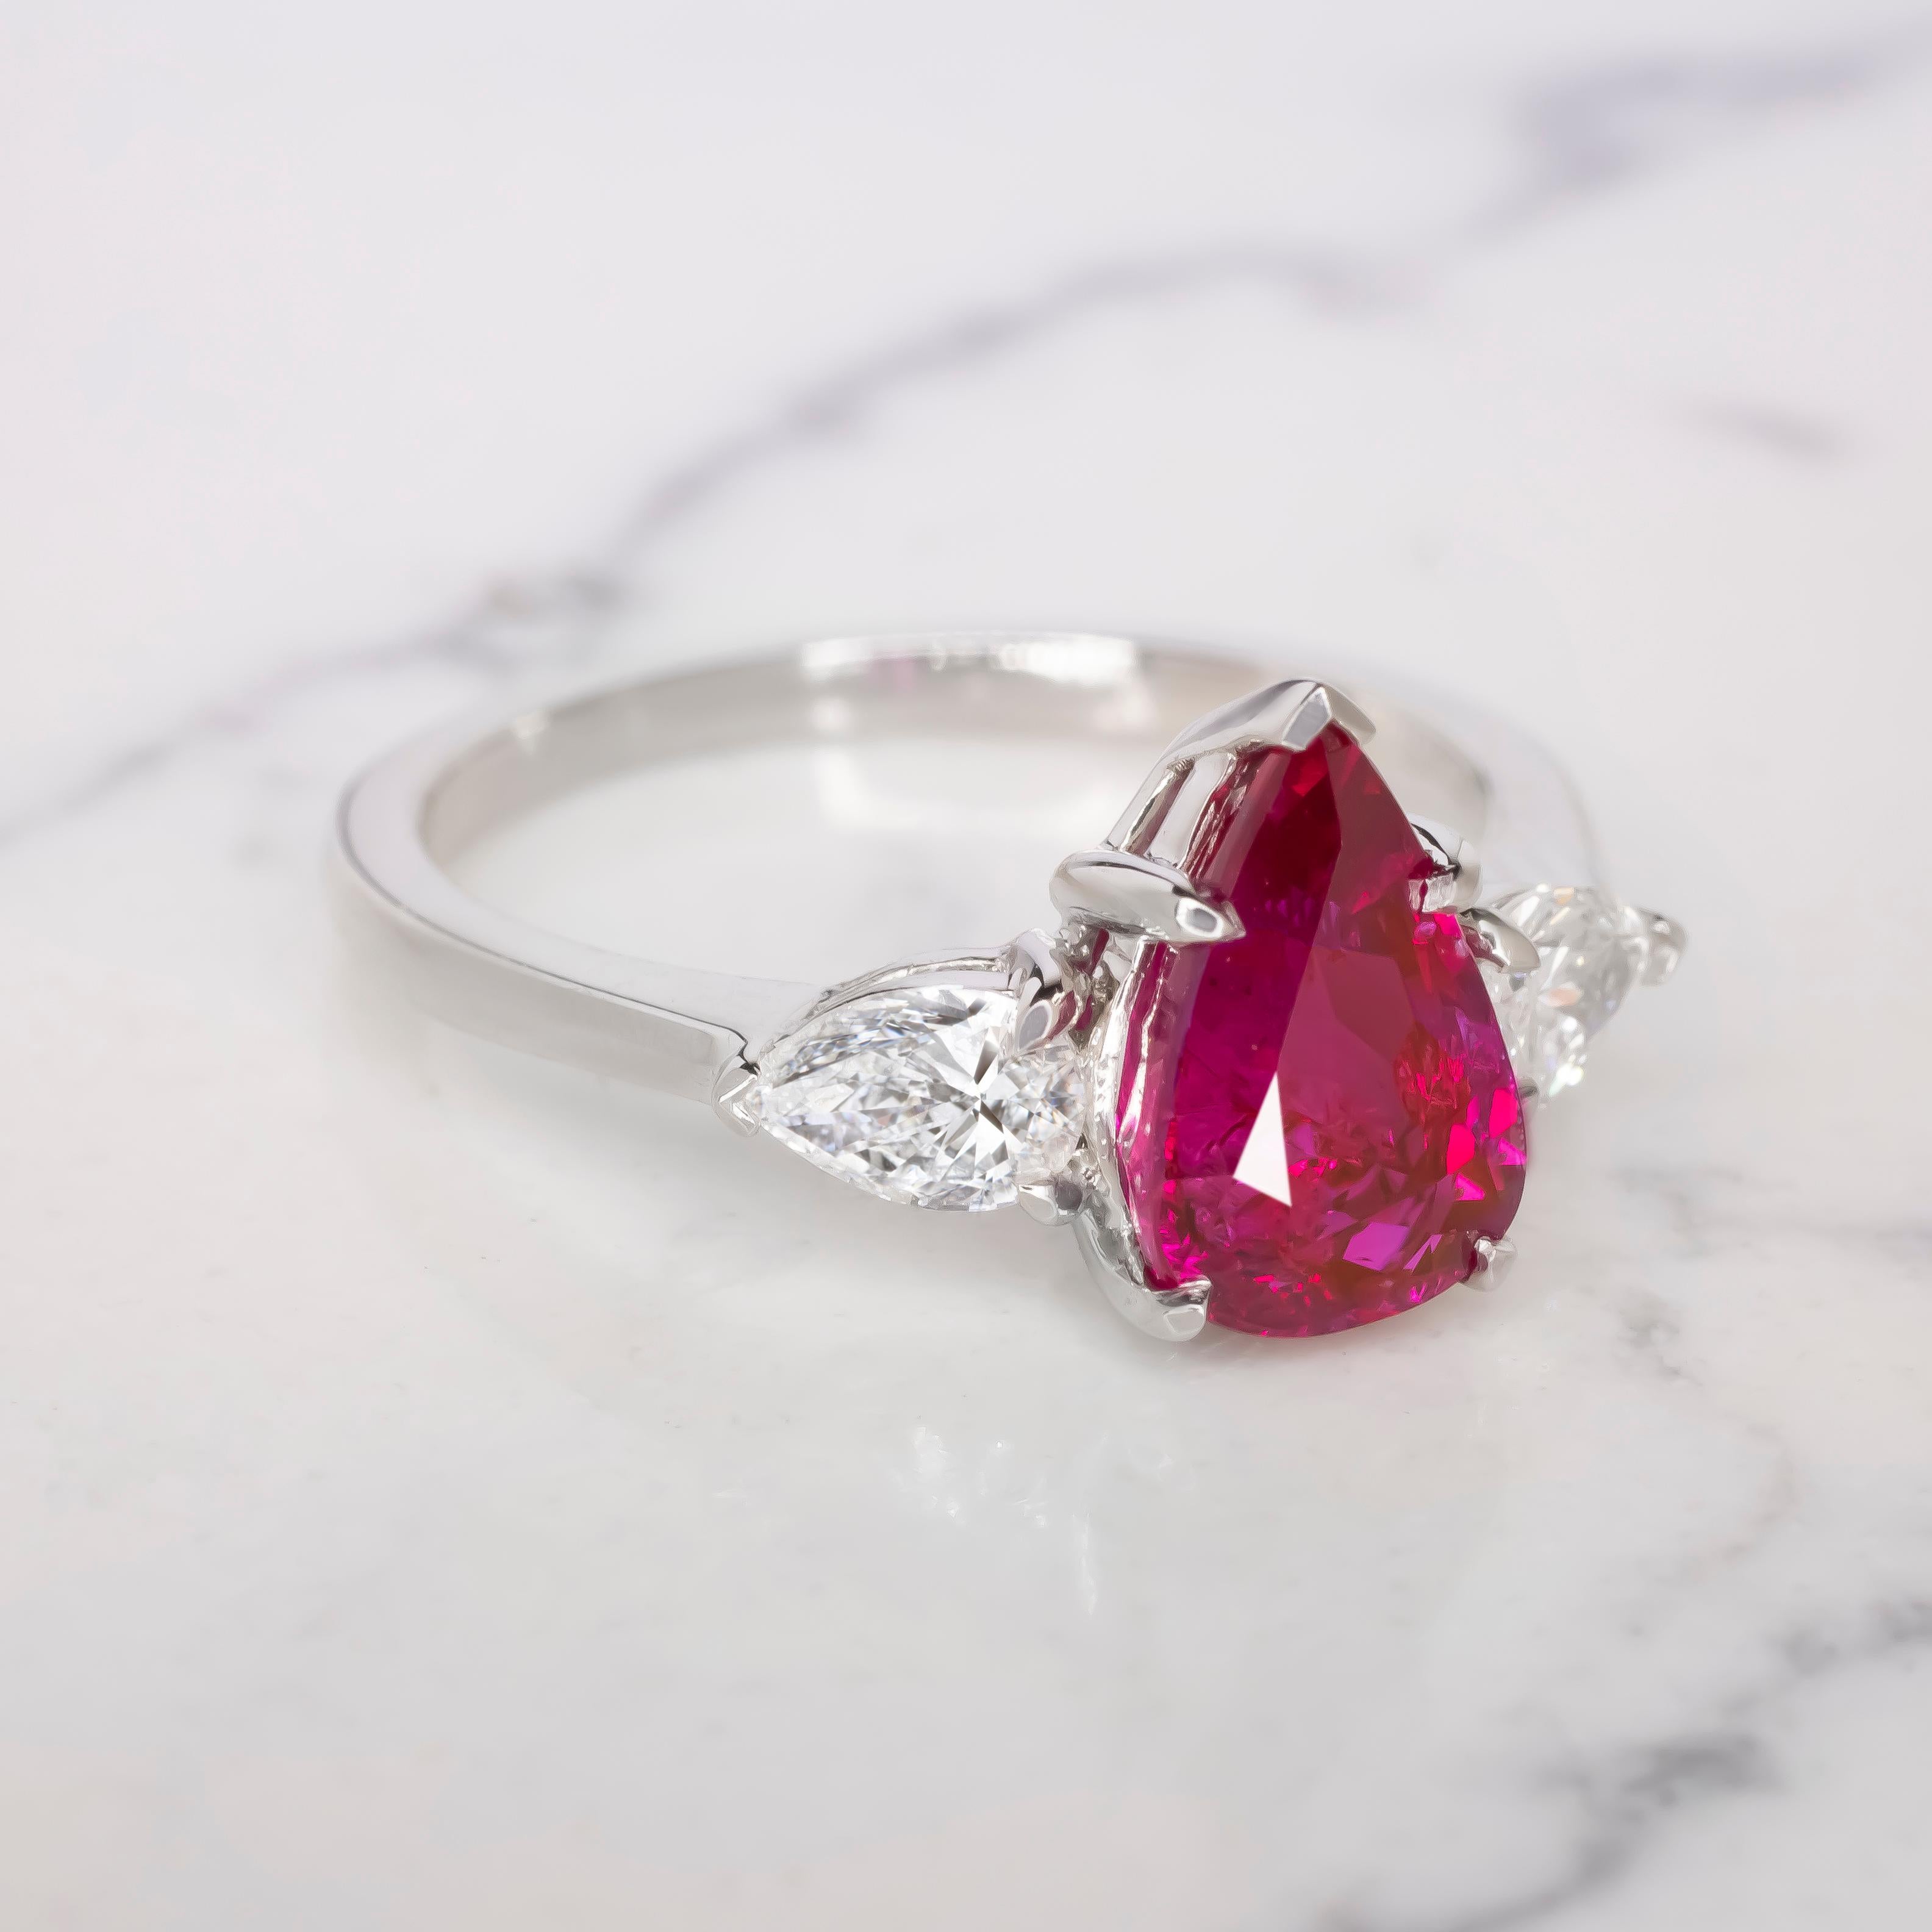 Antinori Di Sanpietro GRS-zertifizierter Ring mit Rubin und Diamant im Birnenschliff aus 18 Karat Weißgold

Lassen Sie sich vom Glanz der Handwerkskunst von Antinori Di Sanpietro mit diesem exquisiten Rubinring mit drei Steinen verzaubern, der von